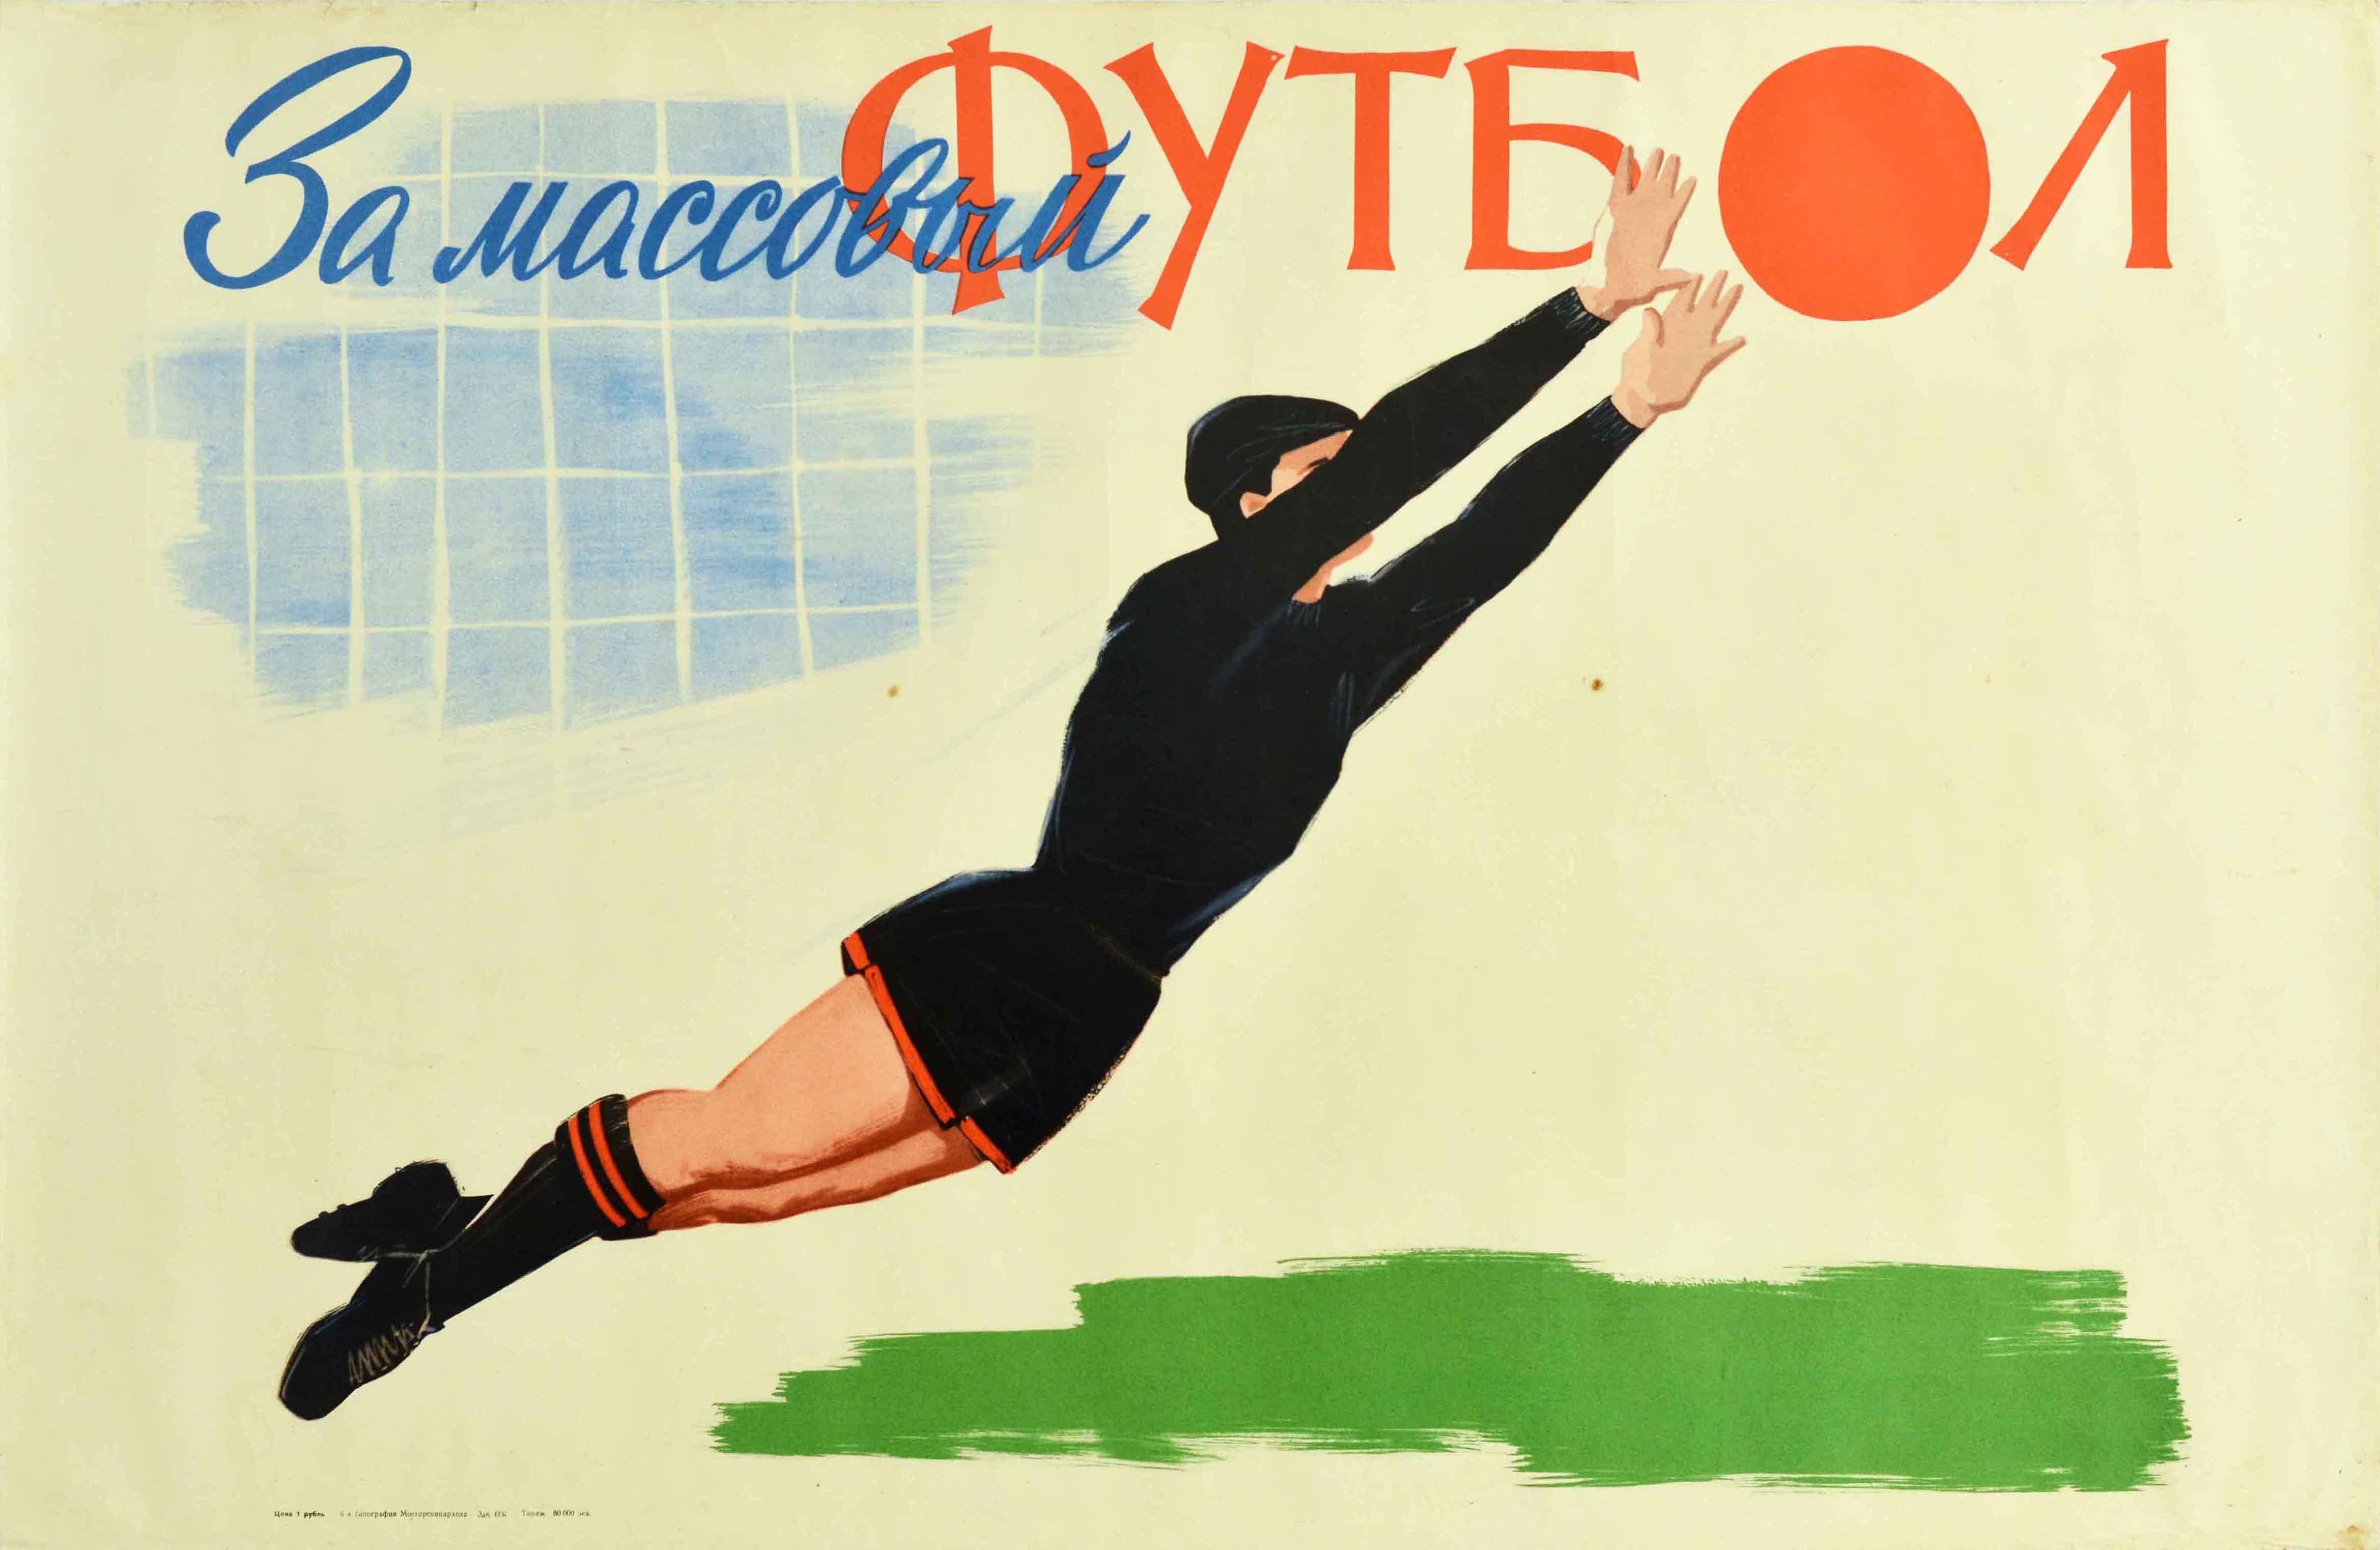 Affiche sportive soviétique d'époque - Pour le football de base / ? ? ? ??????? ? ????? - comportant une illustration d'un gardien de but en uniforme noir représenté en train d'attraper le ballon et de le sauver du but, le ballon comme la lettre A